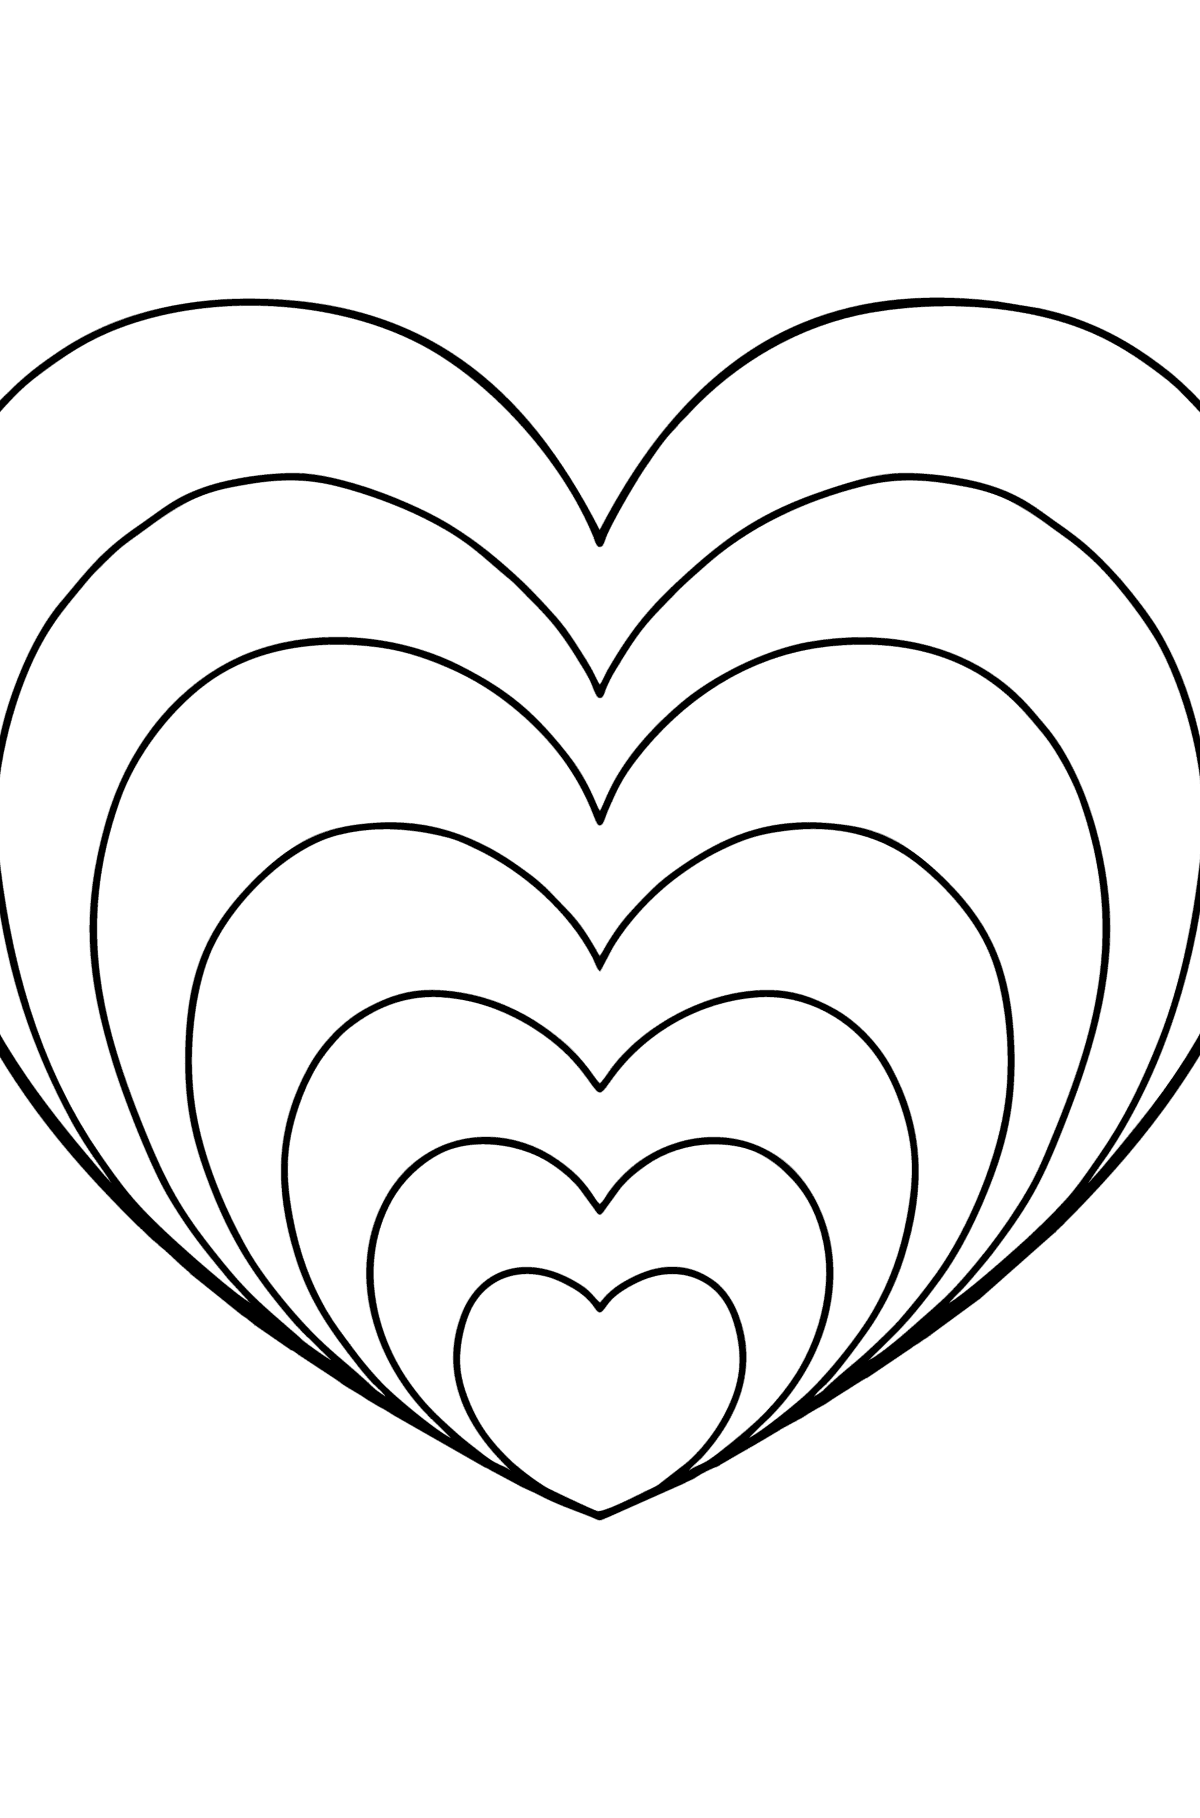 Простая раскраска Сердце  в стиле Дзен - Картинки для Детей